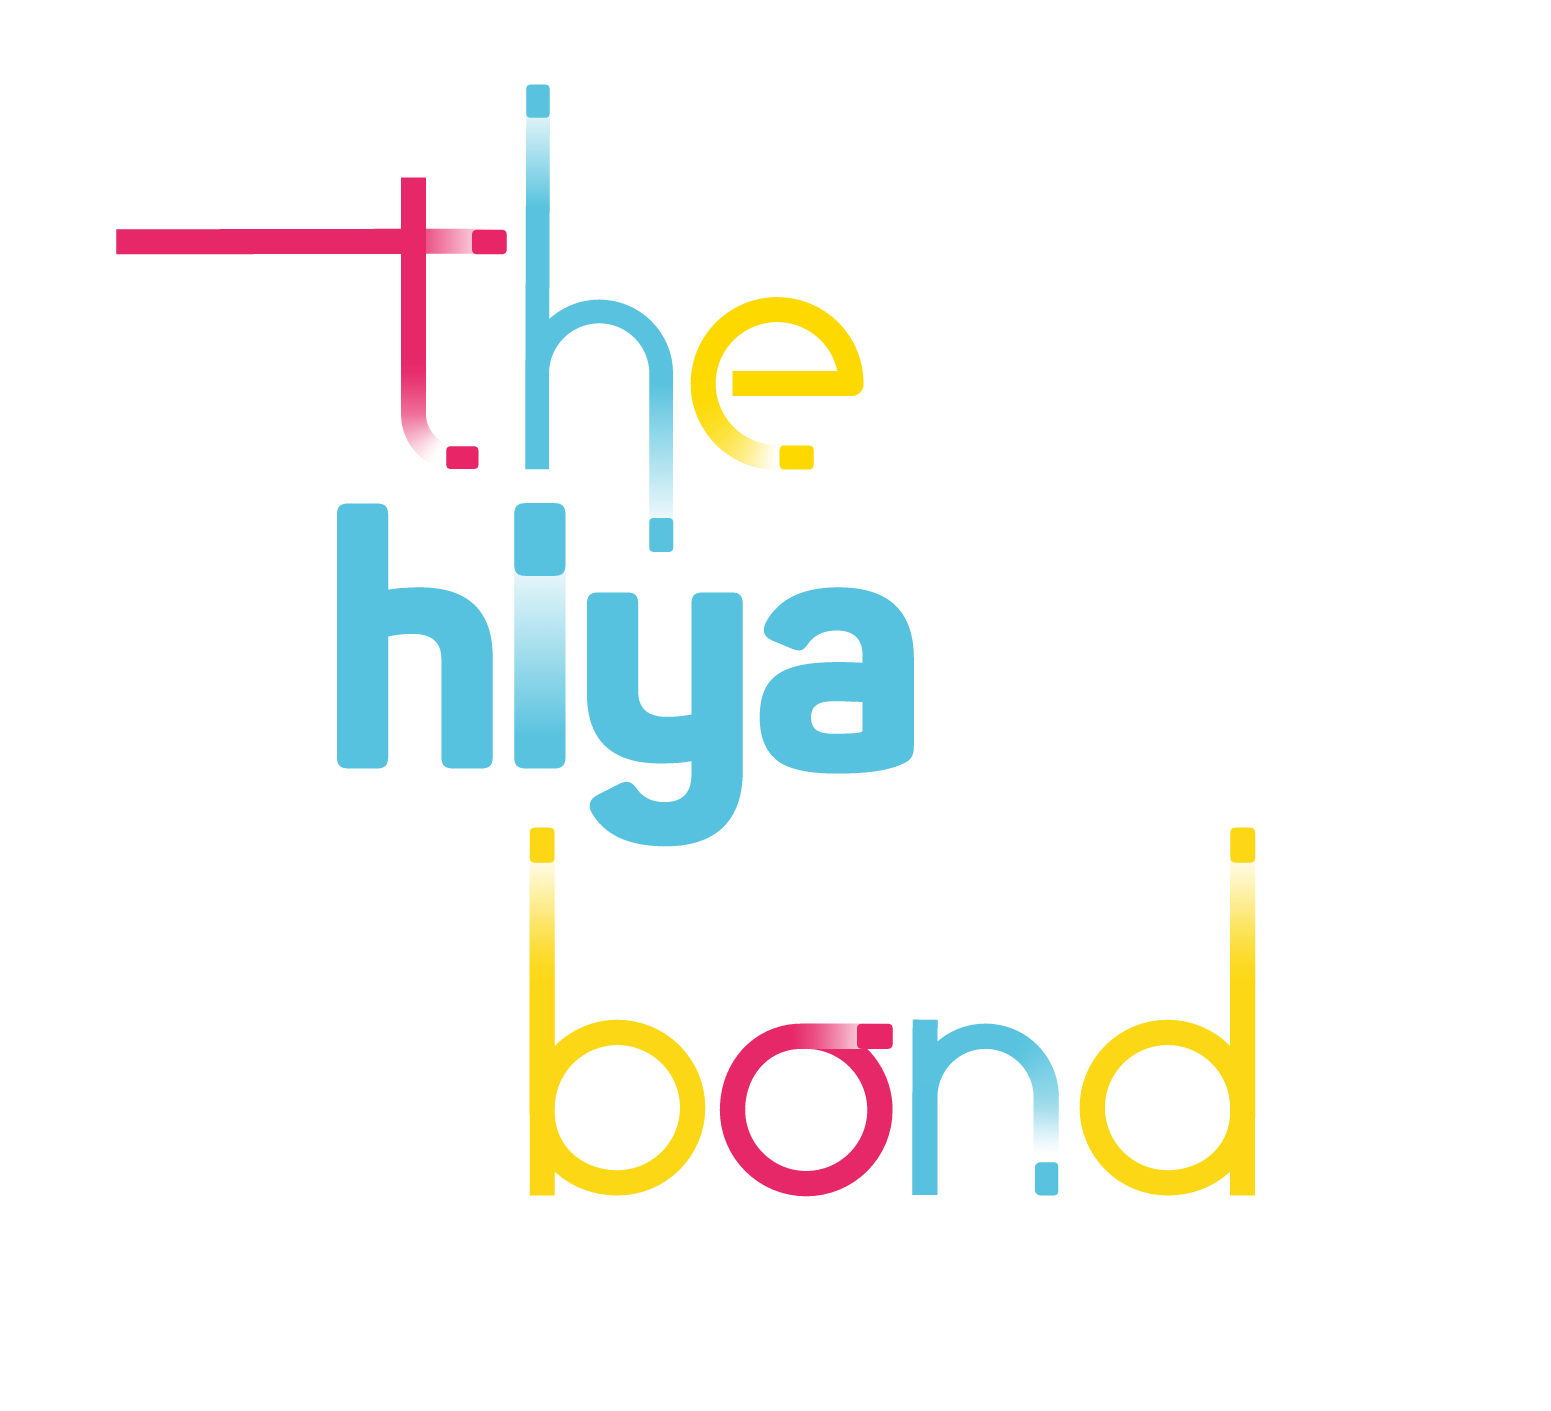 Hiyacar Bond